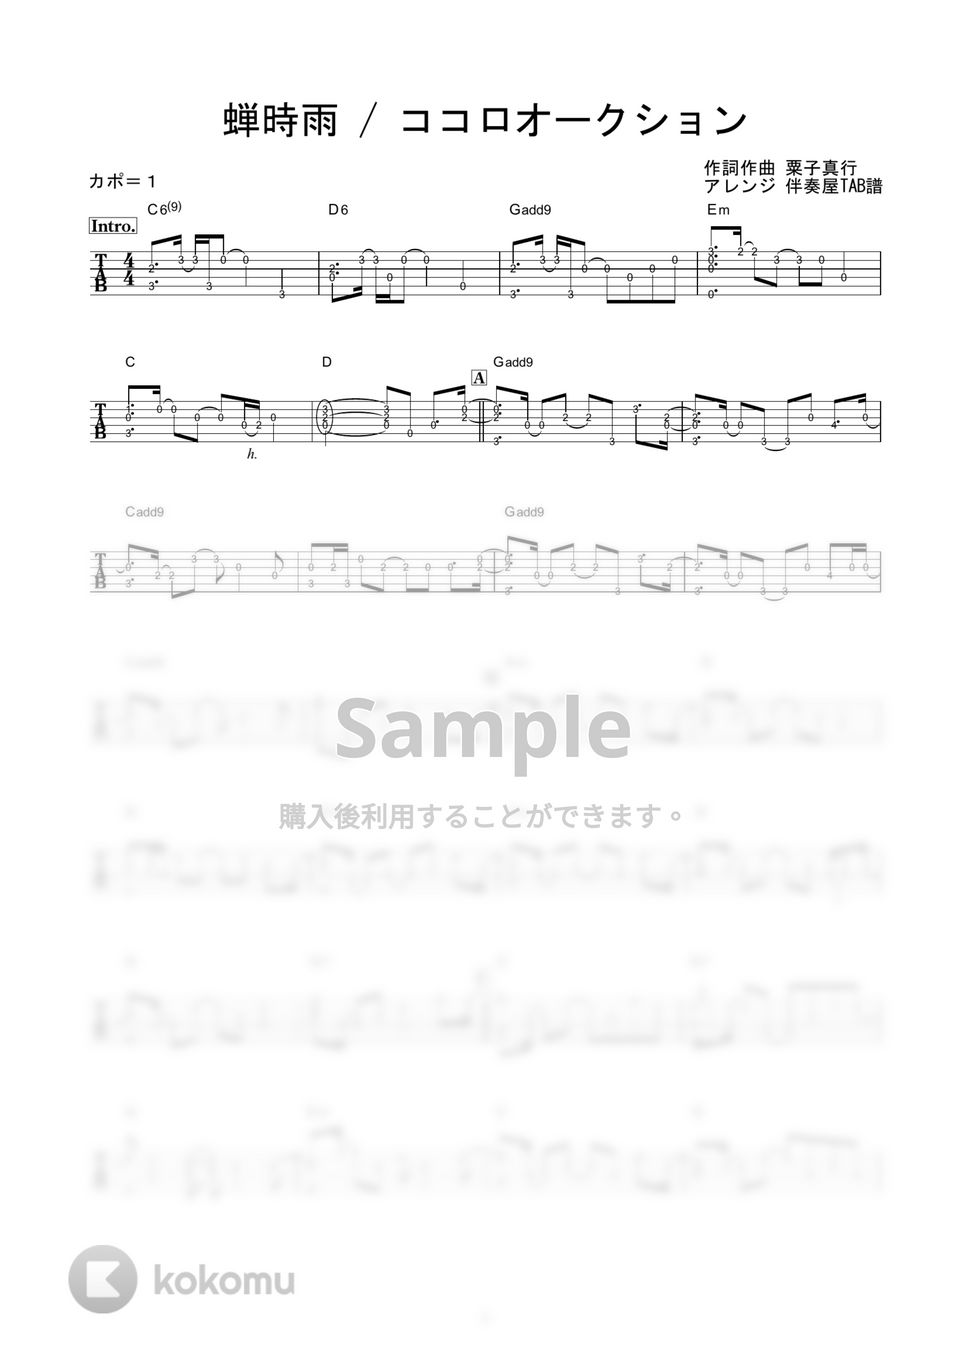 ココロオークション - 蝉時雨 (かんたんソロギター) by 伴奏屋TAB譜